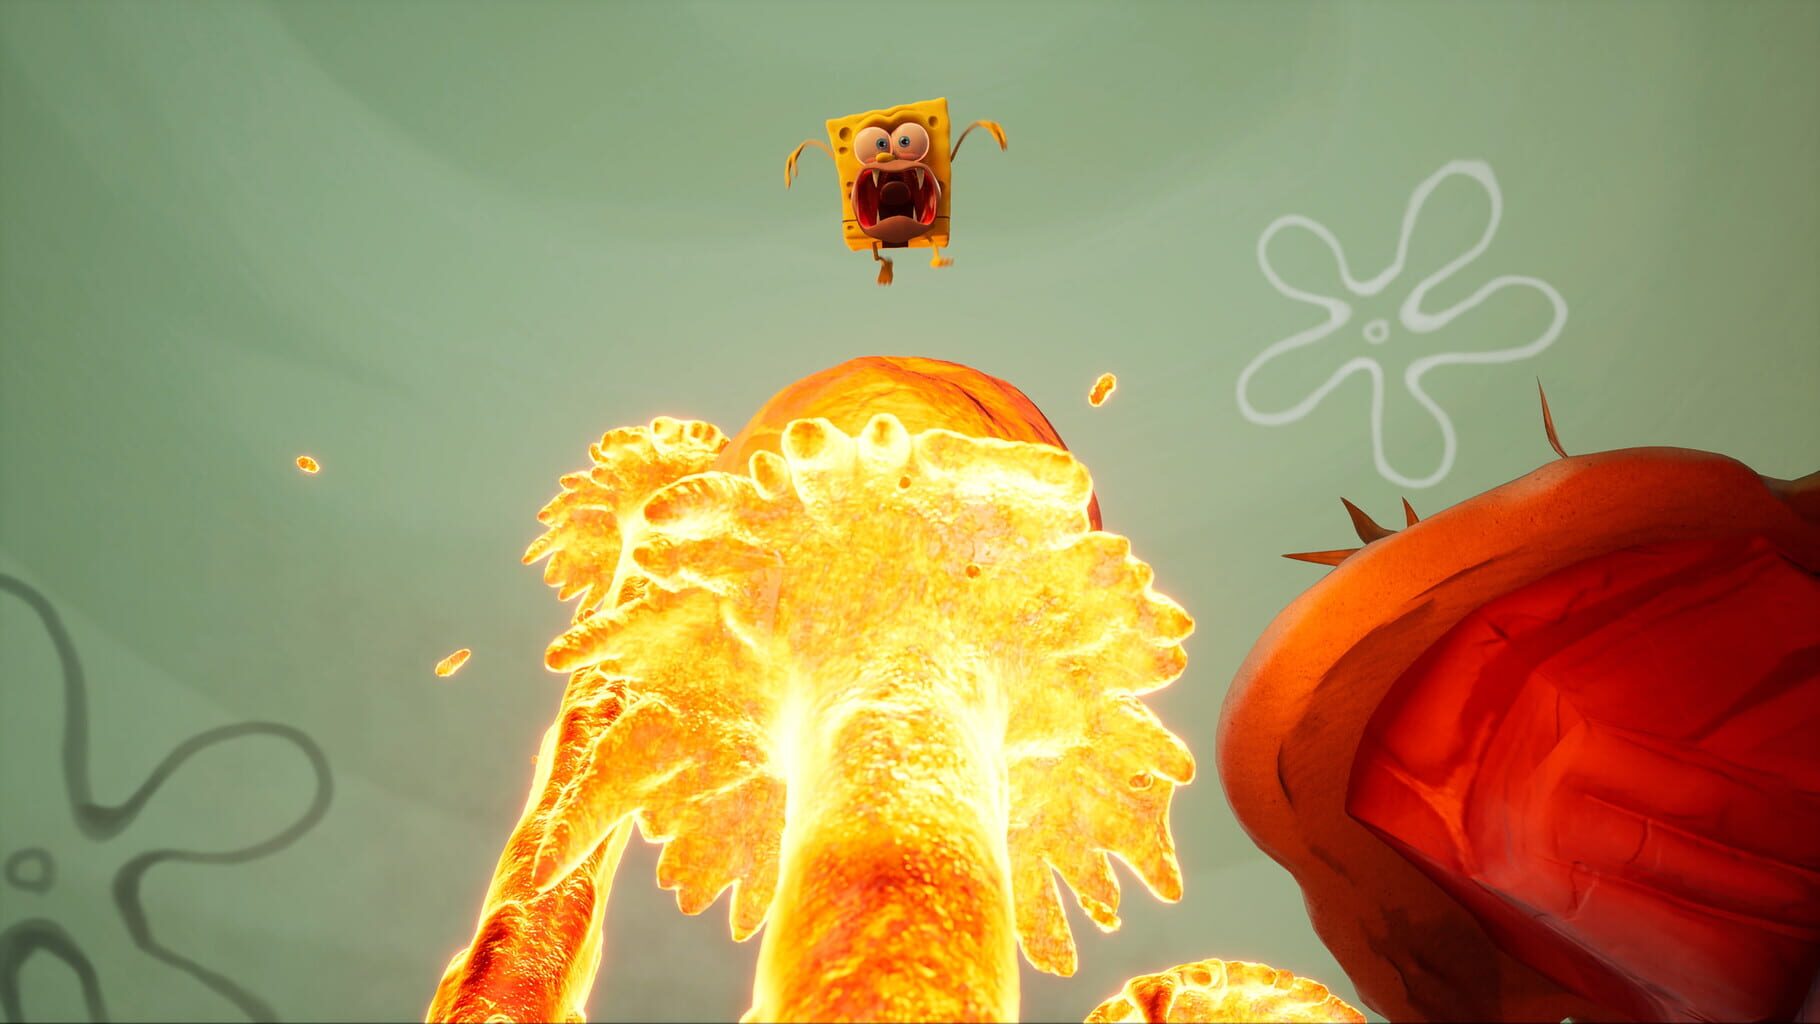 Screenshot for SpongeBob SquarePants: The Cosmic Shake